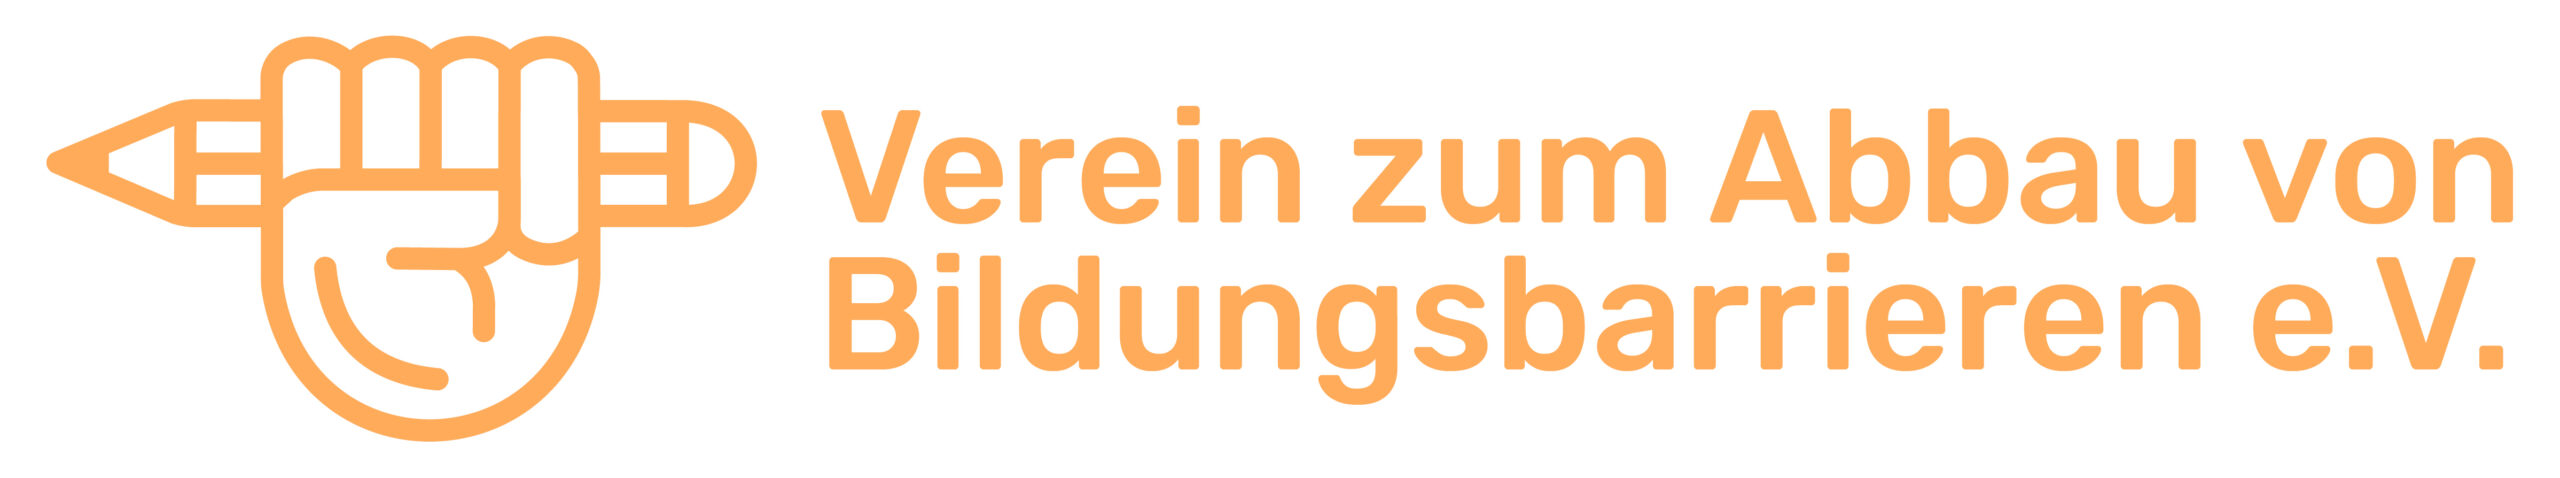 Logo des Vereins, eine gehobene linke Faust hält einen Stift, daneben steht der Schriftzug: Verein zum Abbau von Bildungsbarrieren. Alles hat die Farbe Orange.